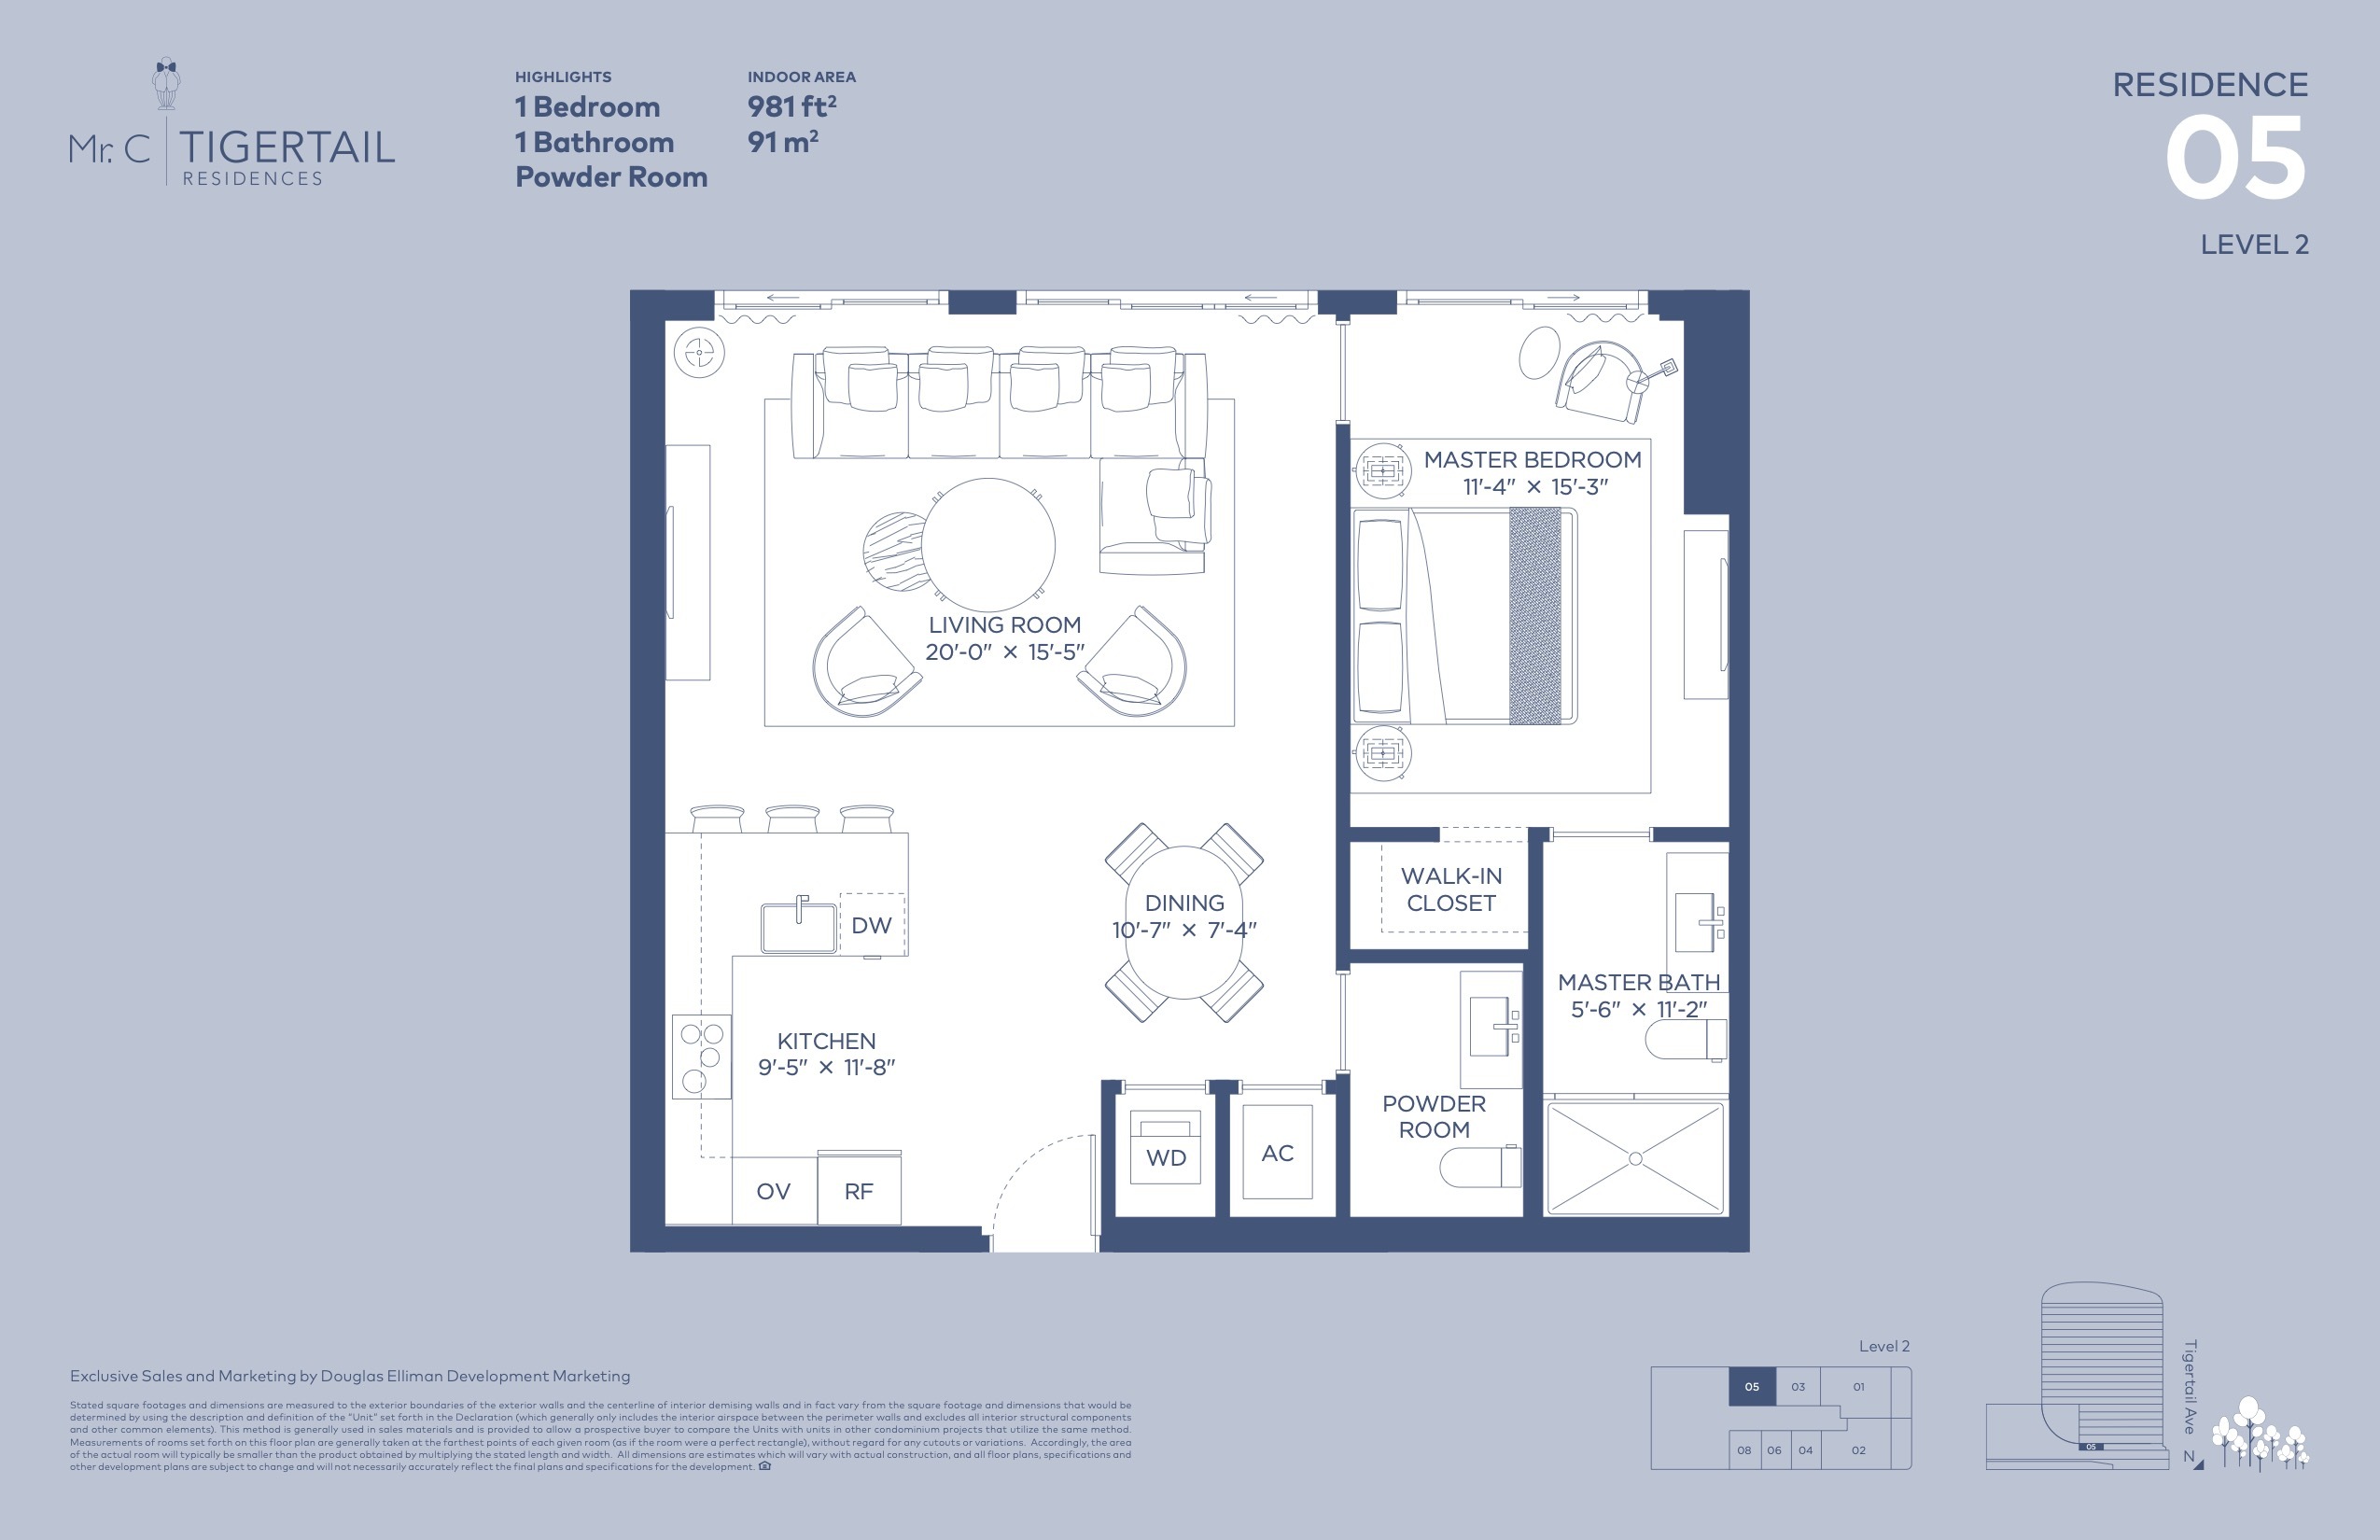 Floor Plan for Mr C Floorplans, Level 2 Residence 05